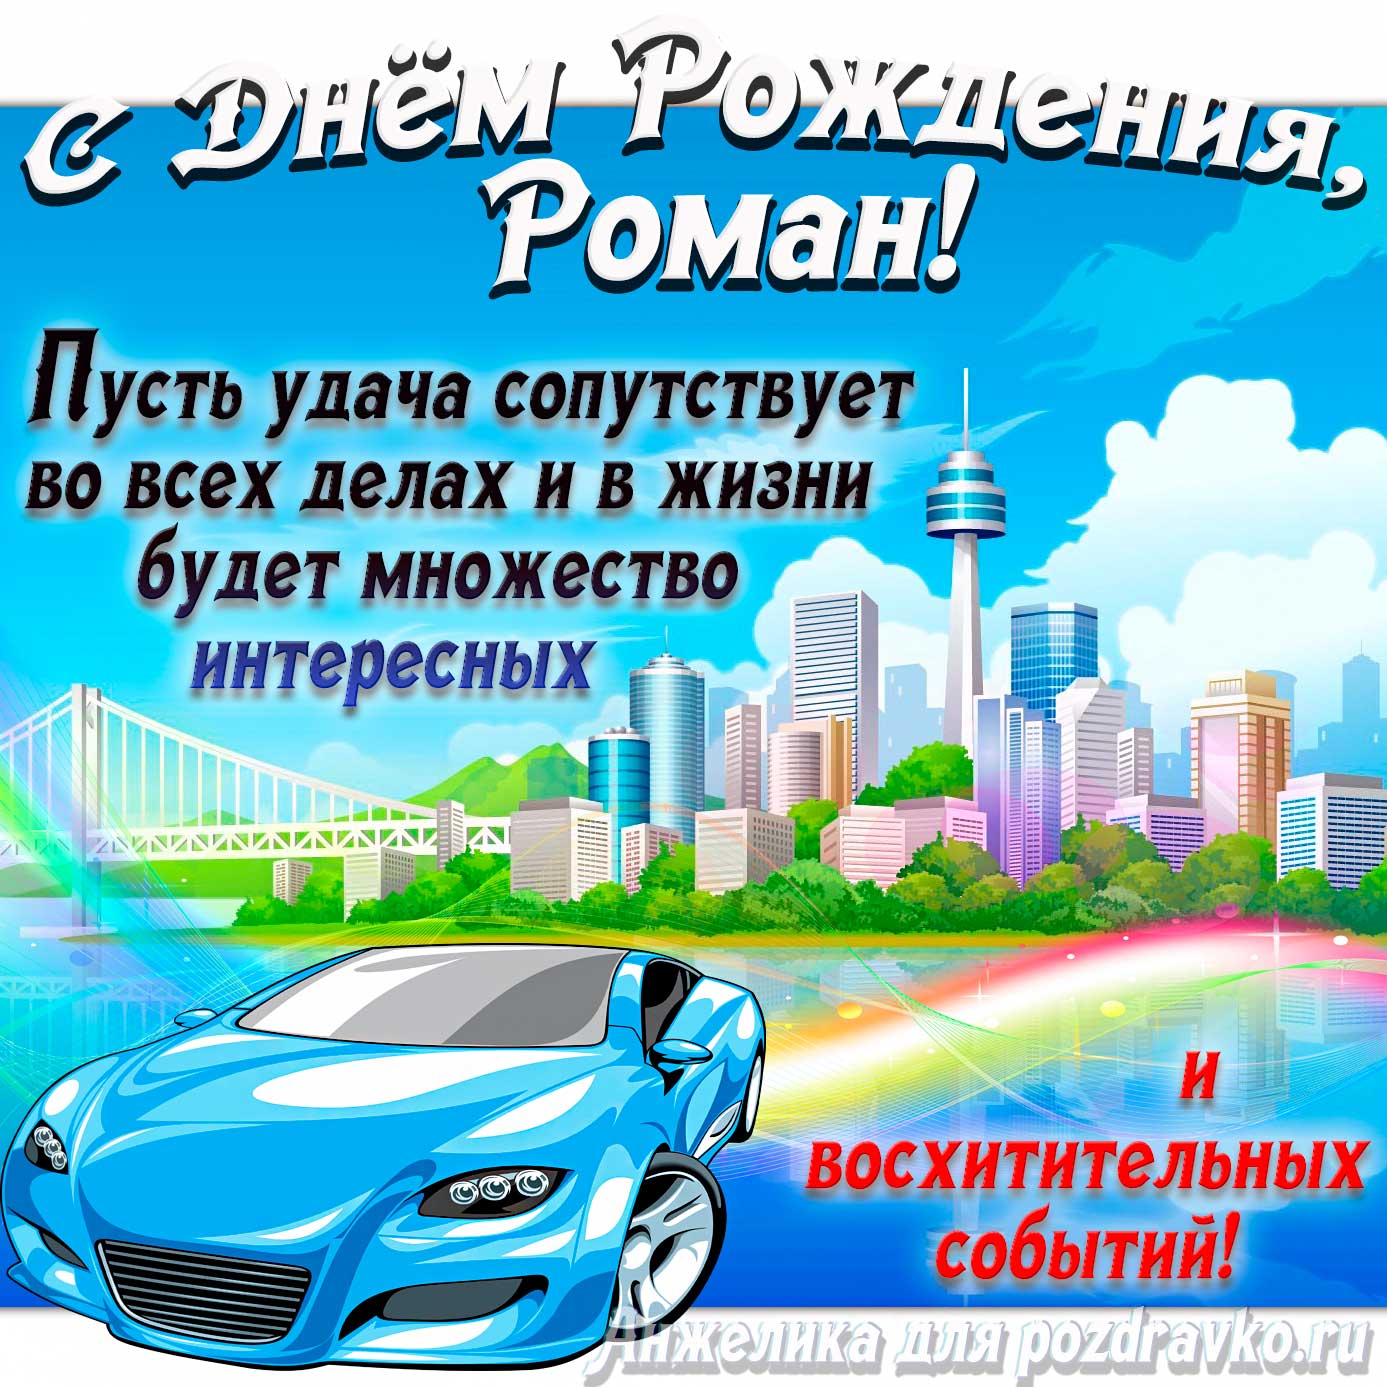 Открытка - с Днём Рождения Роман с голубой машиной и пожеланием. Скачать бесплатно или отправить картинку.